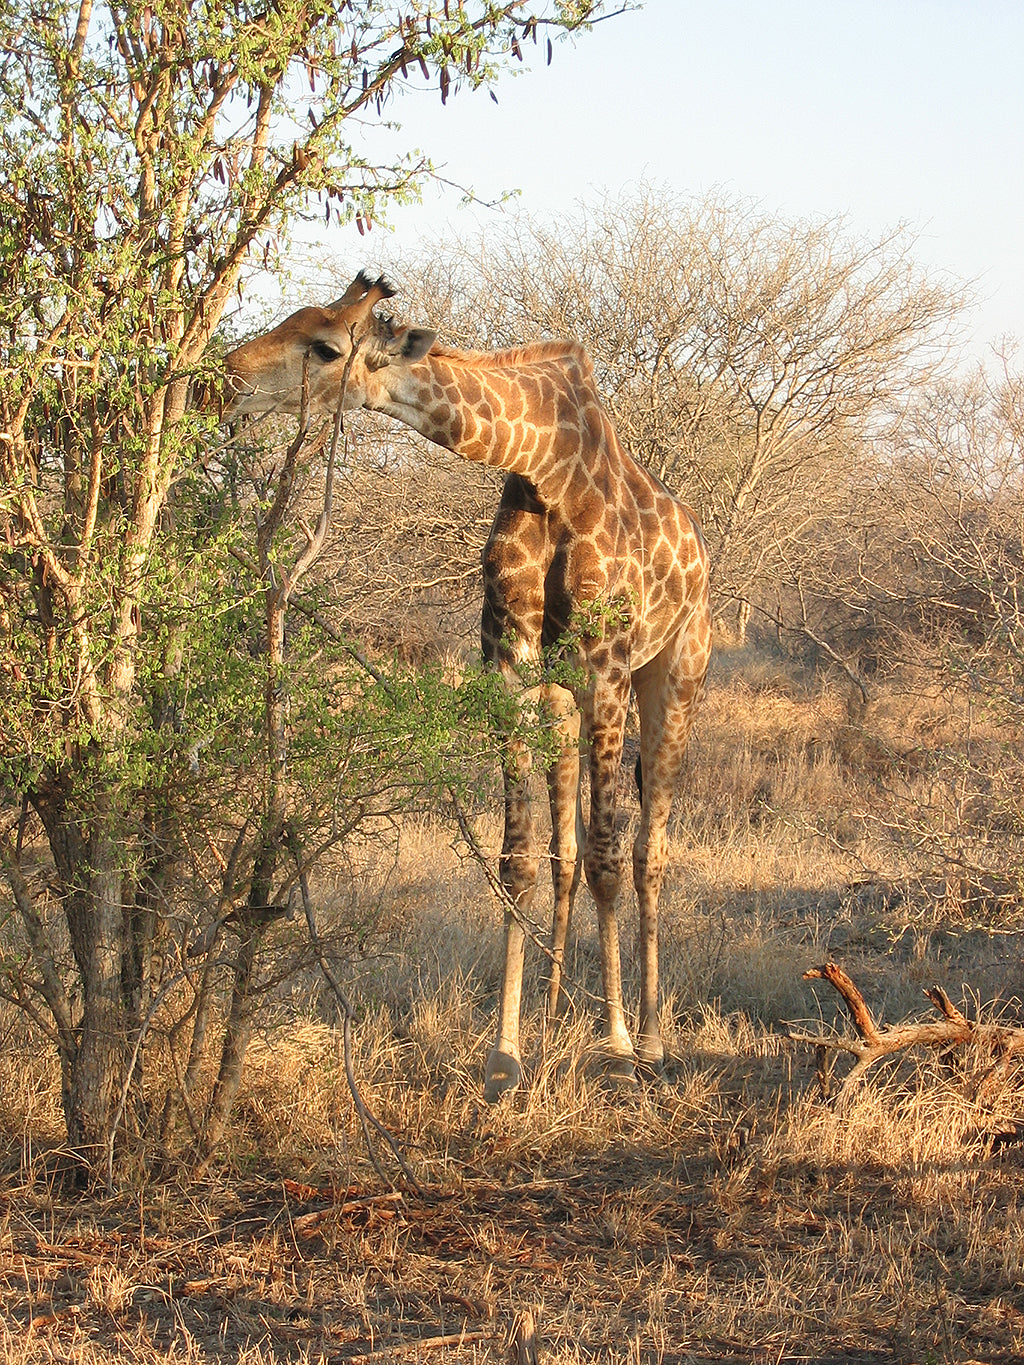 Animal instincts / giraffe | Giraffe at sunset at Madikwe Game Reserve, South Africa | © Kellie Shearwood